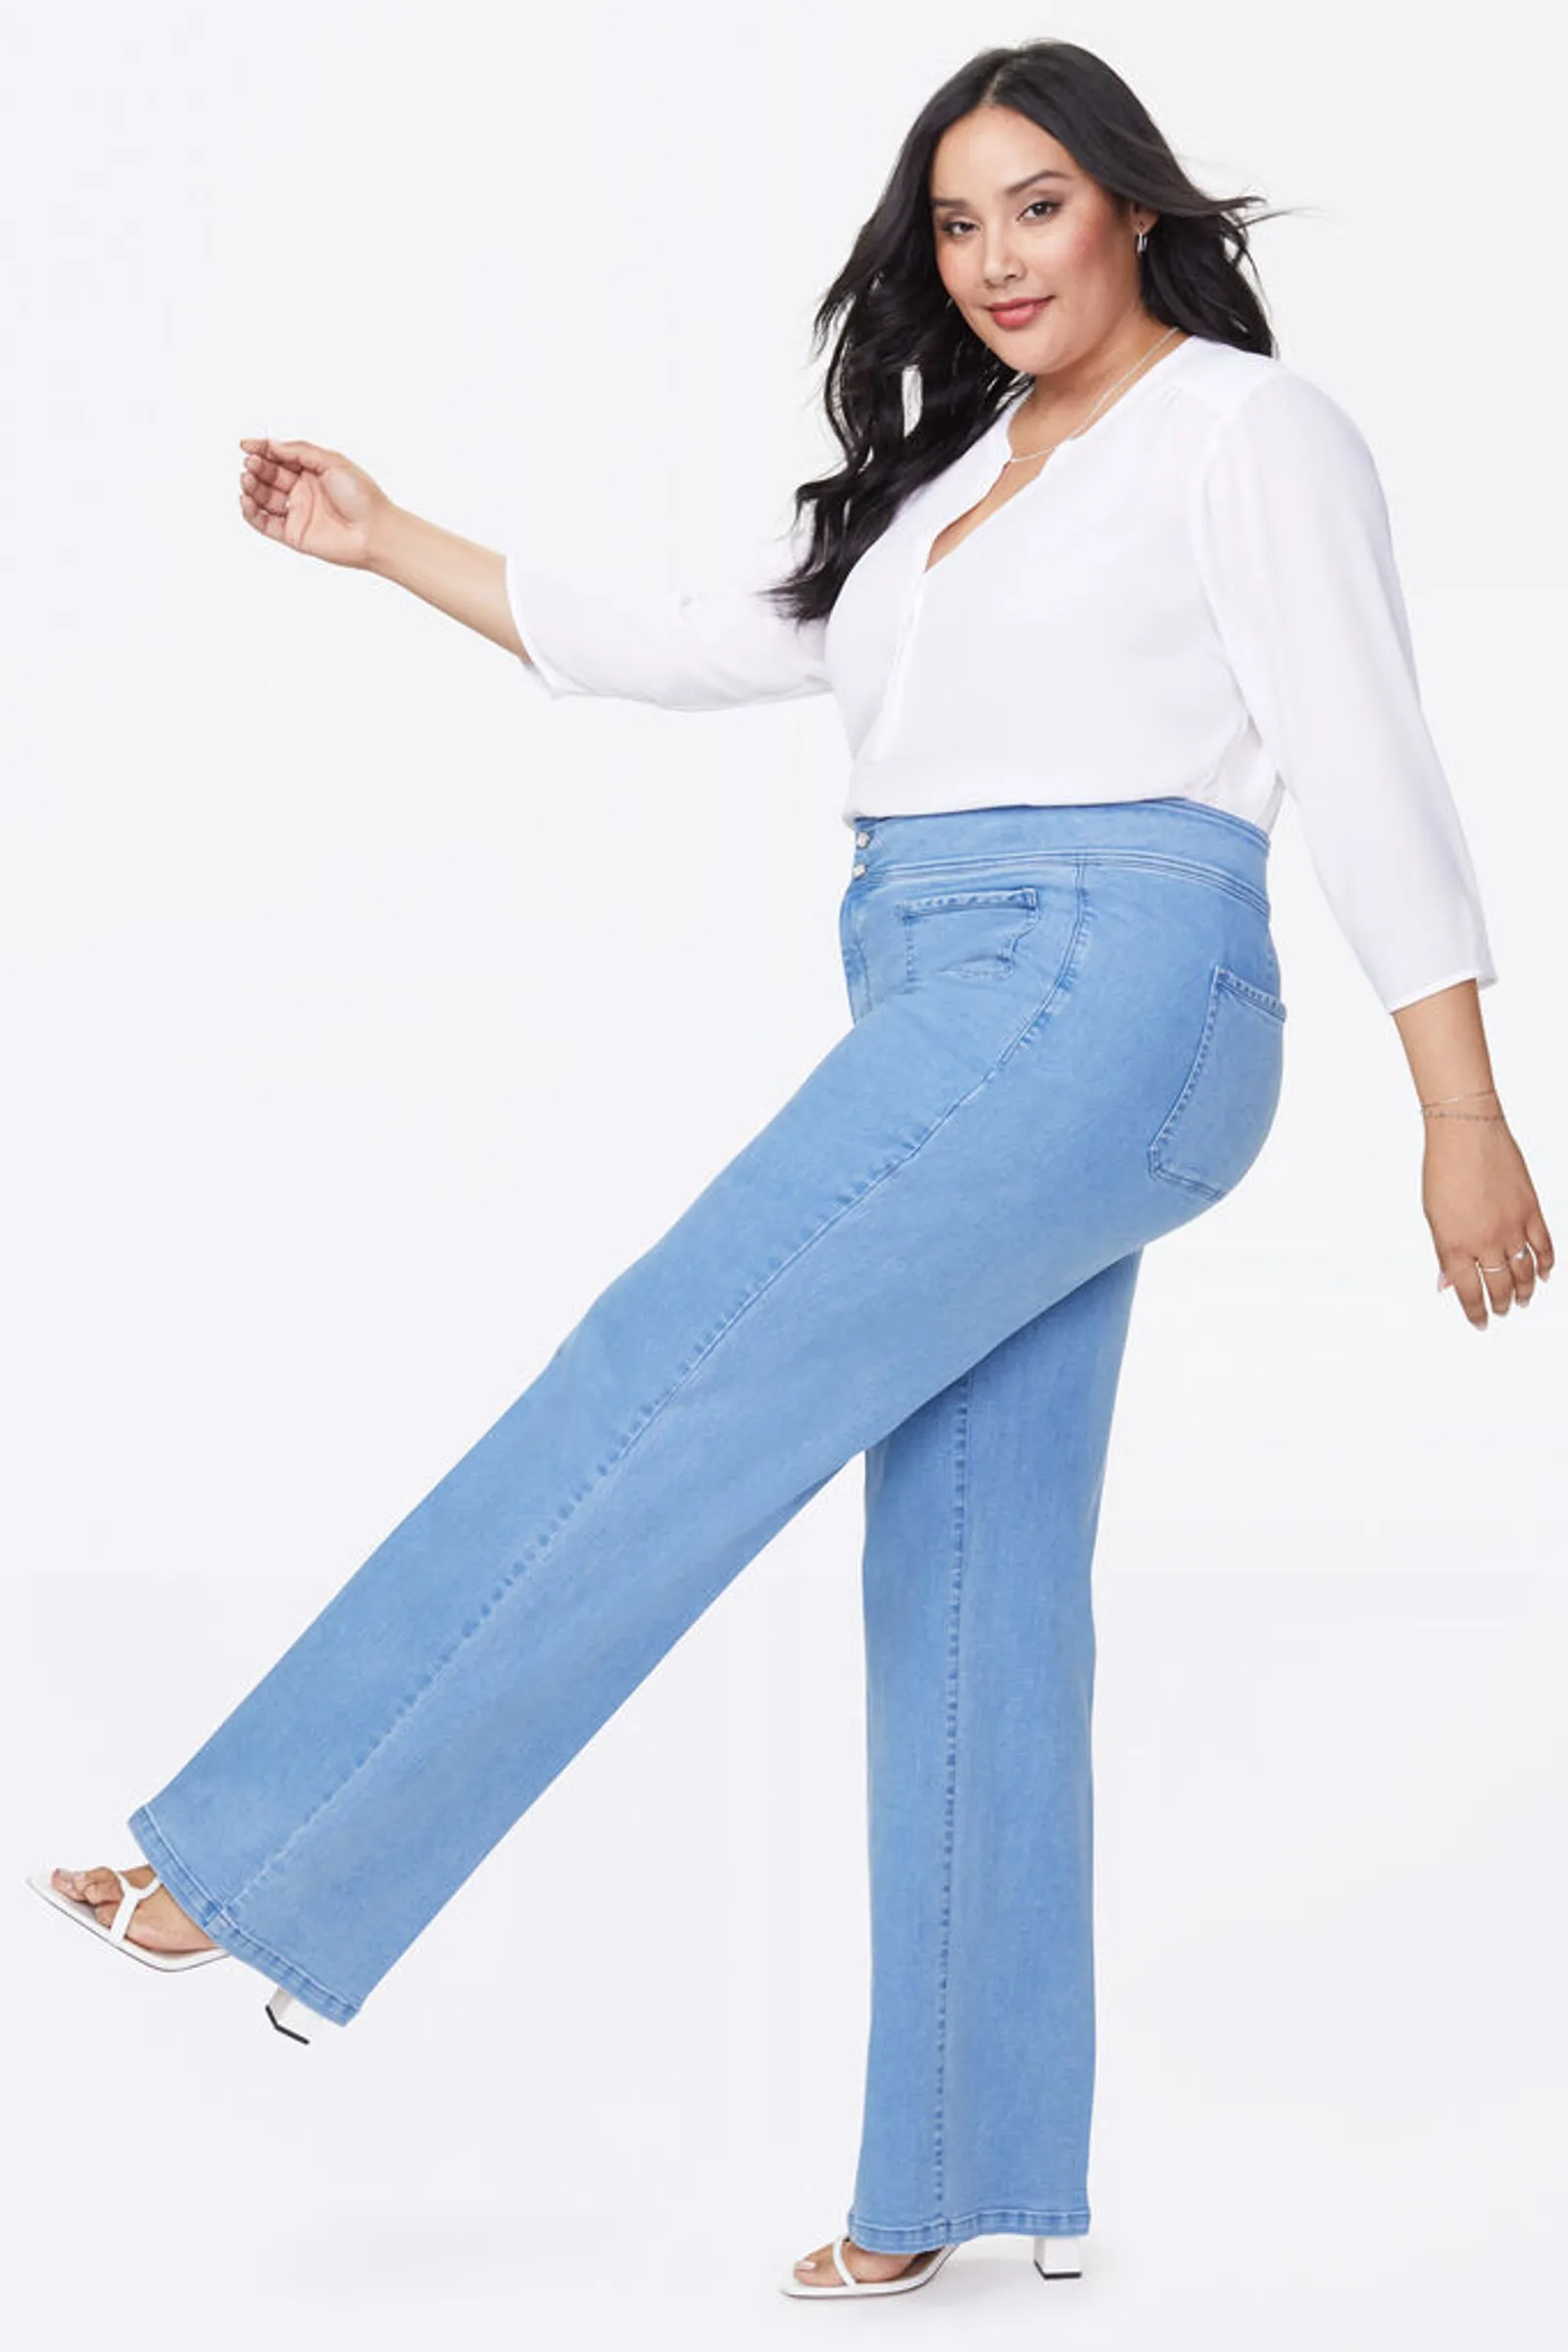 Pilihan Celana Jeans untuk Pemilik Paha Besar atau Atletis